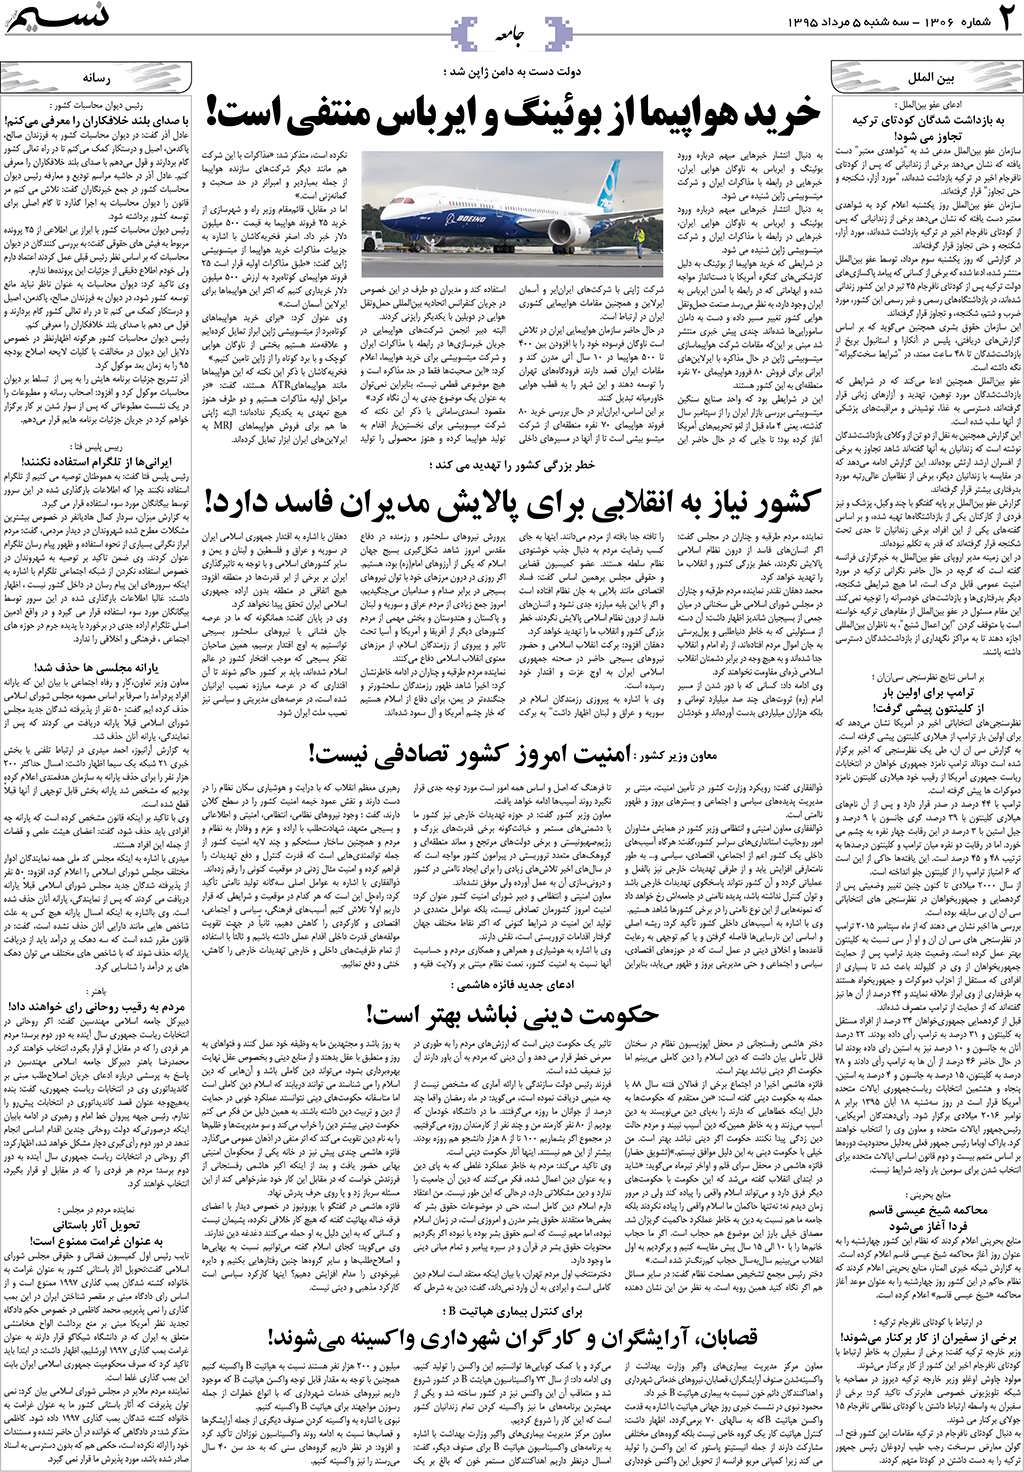 صفحه جامعه روزنامه نسیم شماره 1306